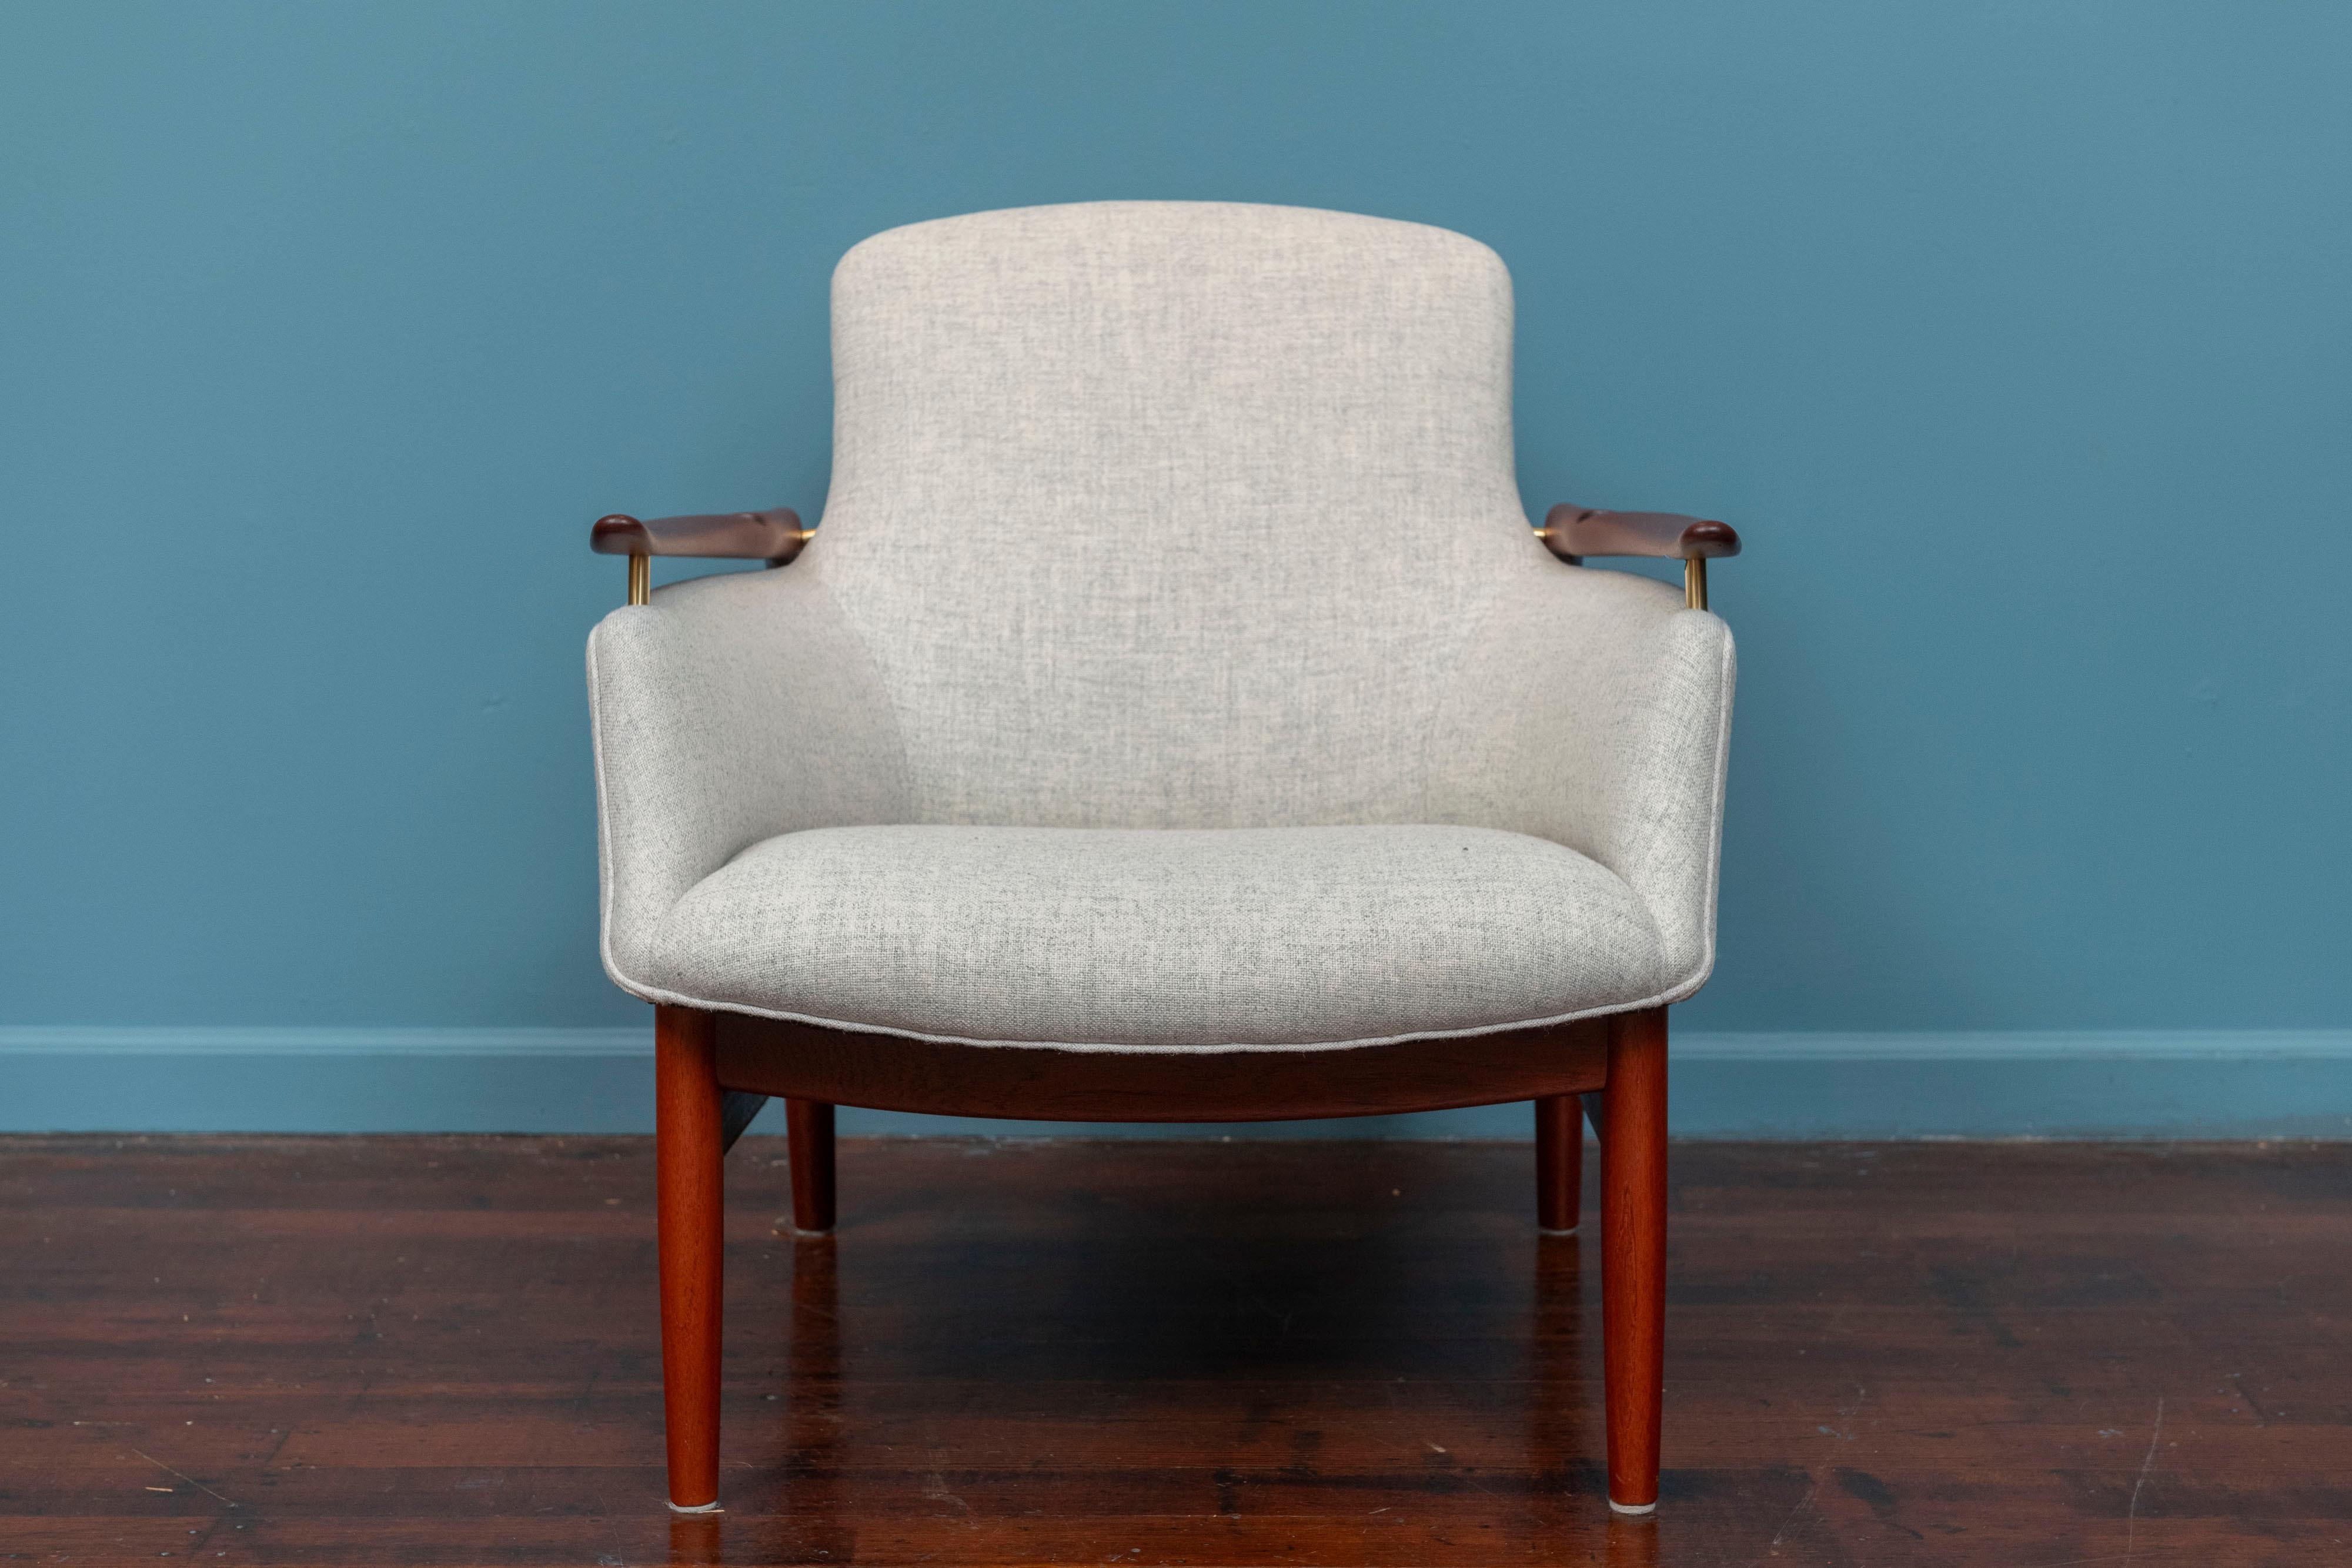 Finn Juhls Entwurf NV-53 Lounge Chair für Niels Vodder, Dänemark. Anspruchsvoller und eleganter Stuhl mit Armlehnen und Gestell aus massivem Teakholz, hergestellt von Niels Vodder im Jahr 1953. Neu und liebevoll aufgearbeitet und gepolstert